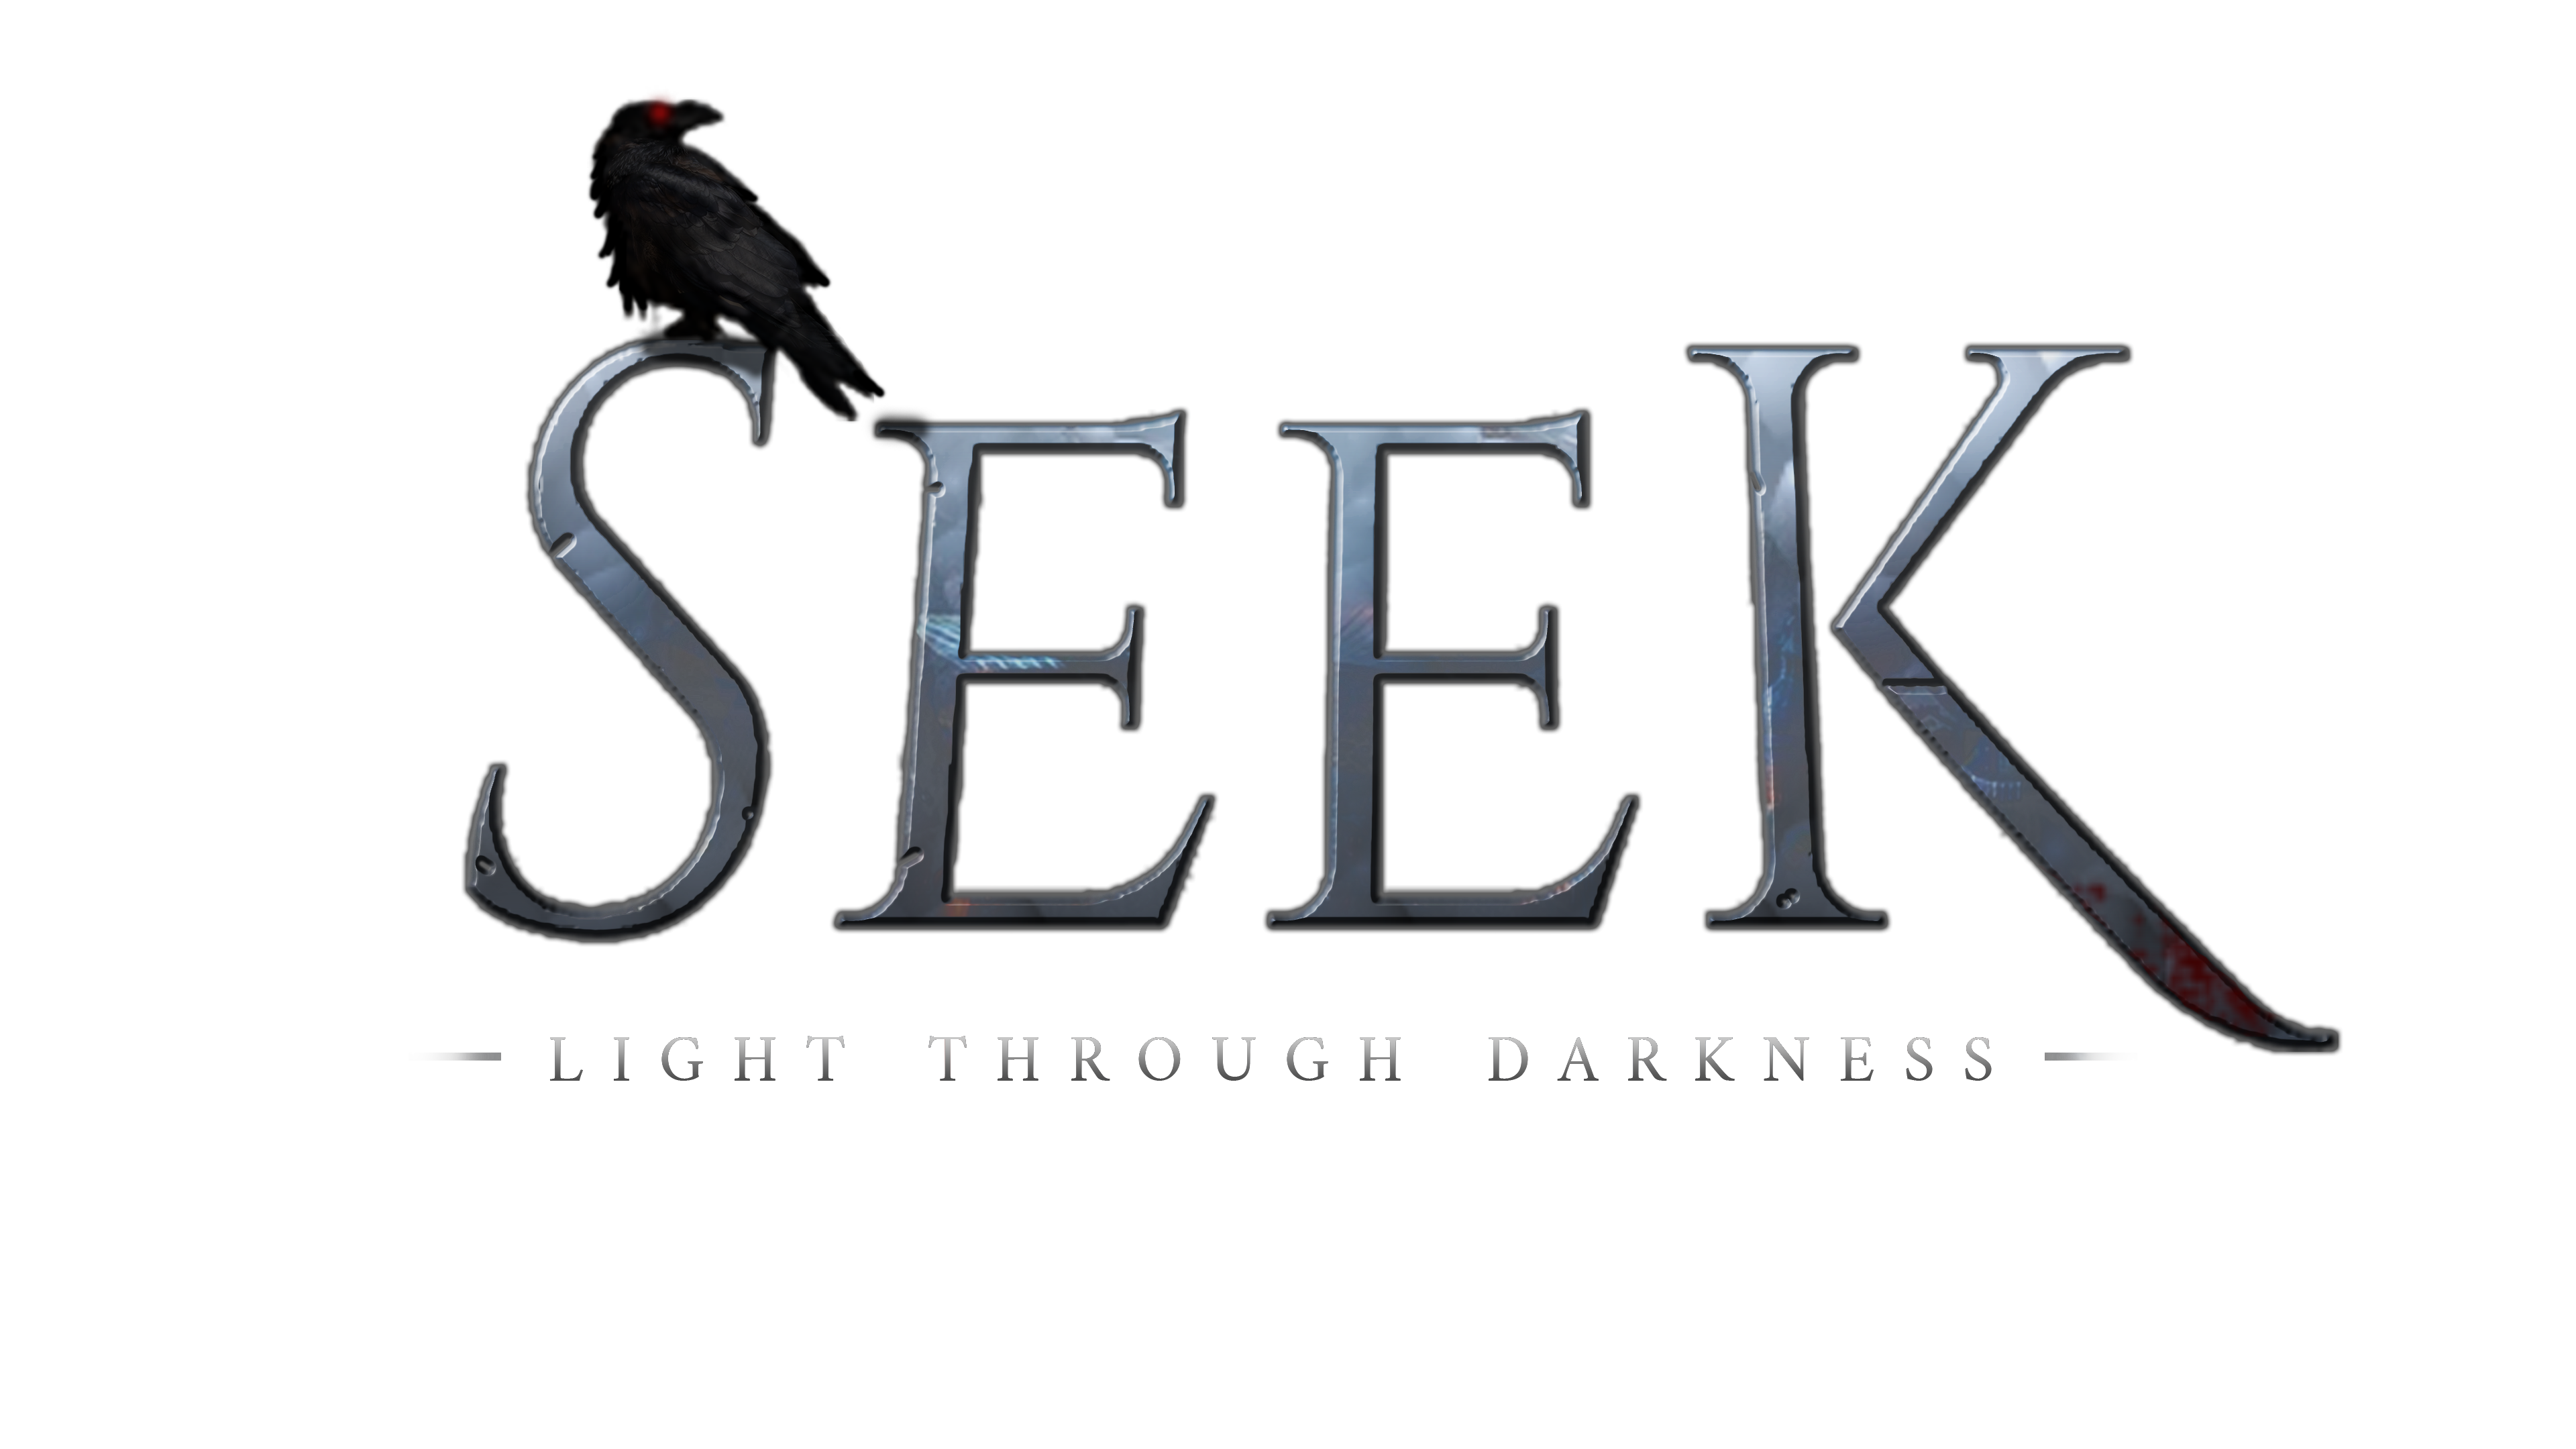 Seek: Light Through Darkness